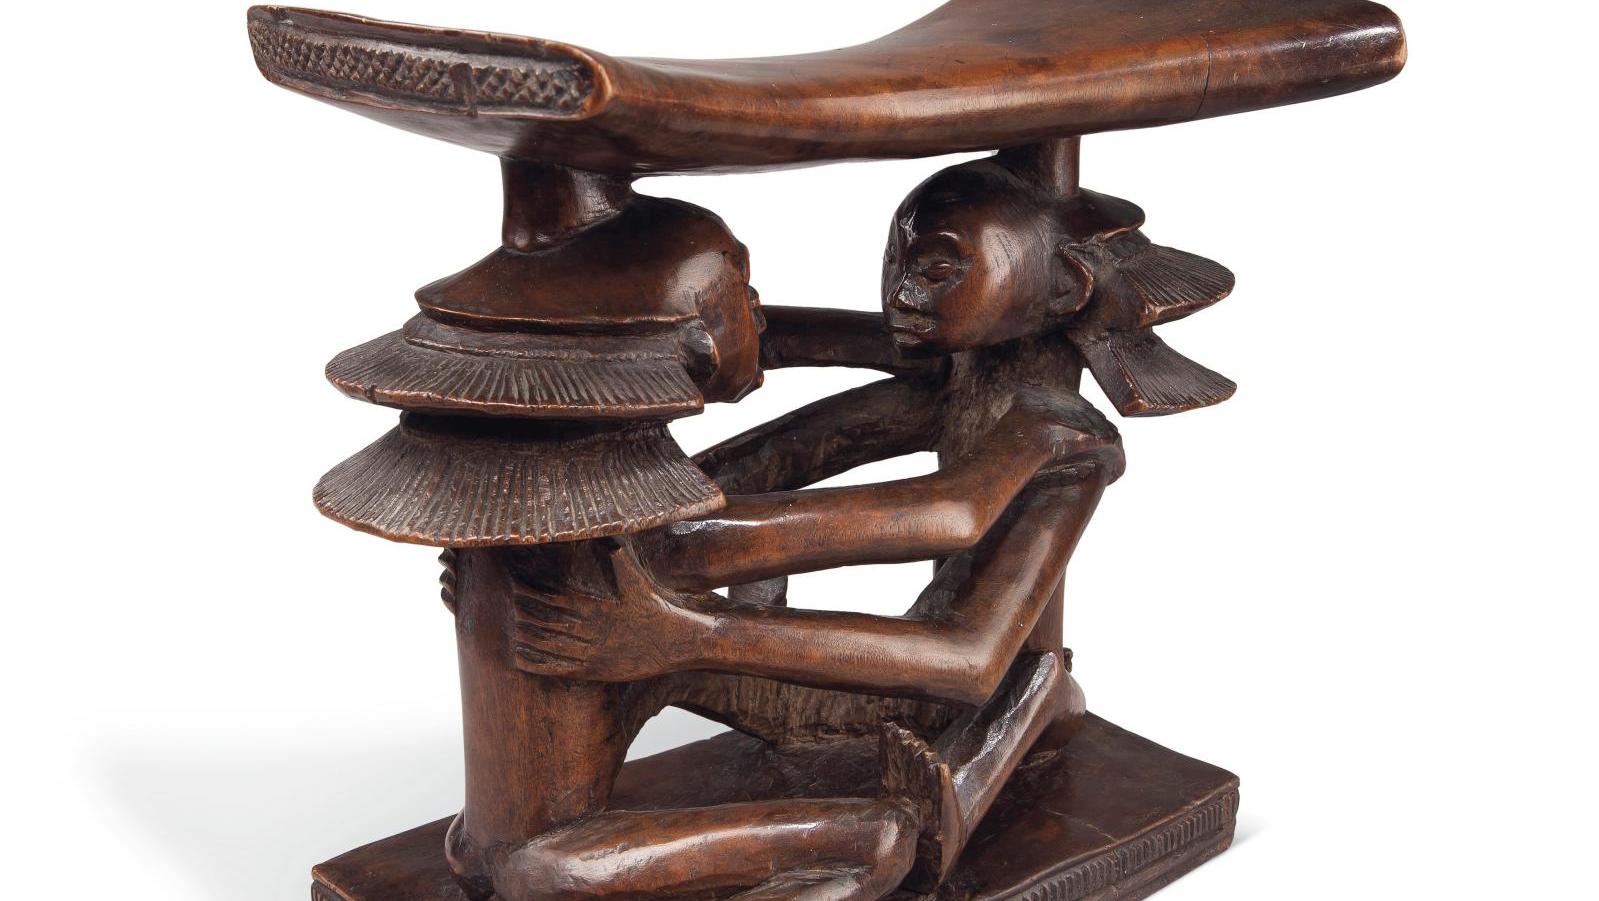 Appui-tête luba-shankadi (République démocratique du Congo), bois, 17,5 x 17,2 cm.... Succession Madeleine Meunier, la magie de l’Afrique